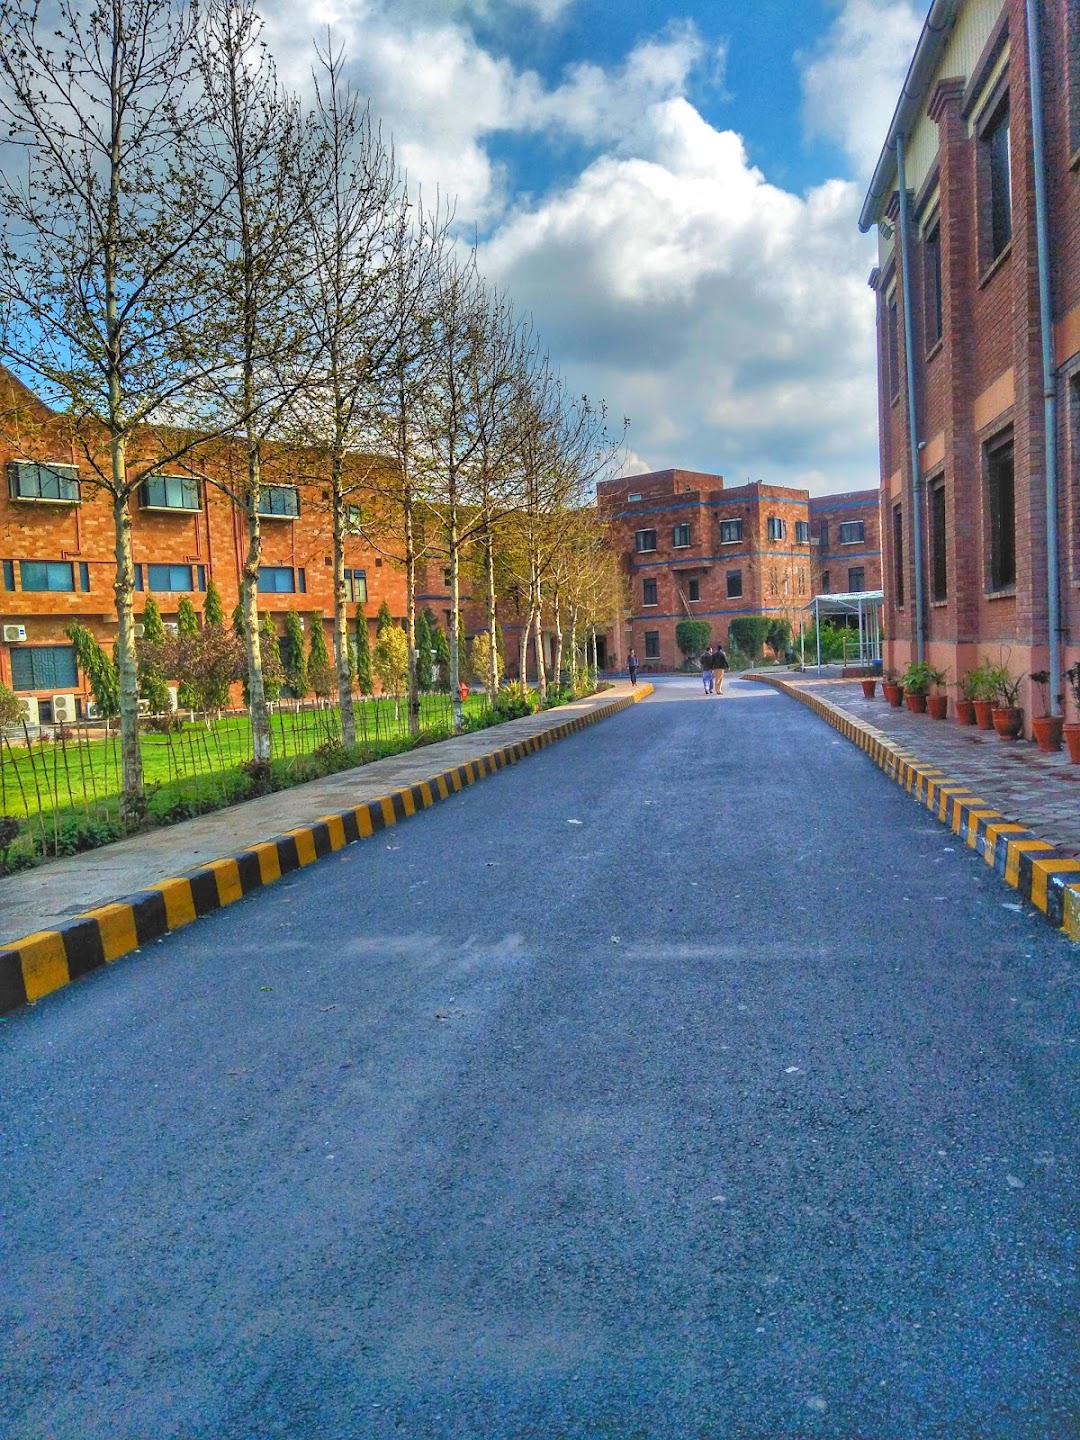 Institute of Management Sciences (IMSciences), Peshawar